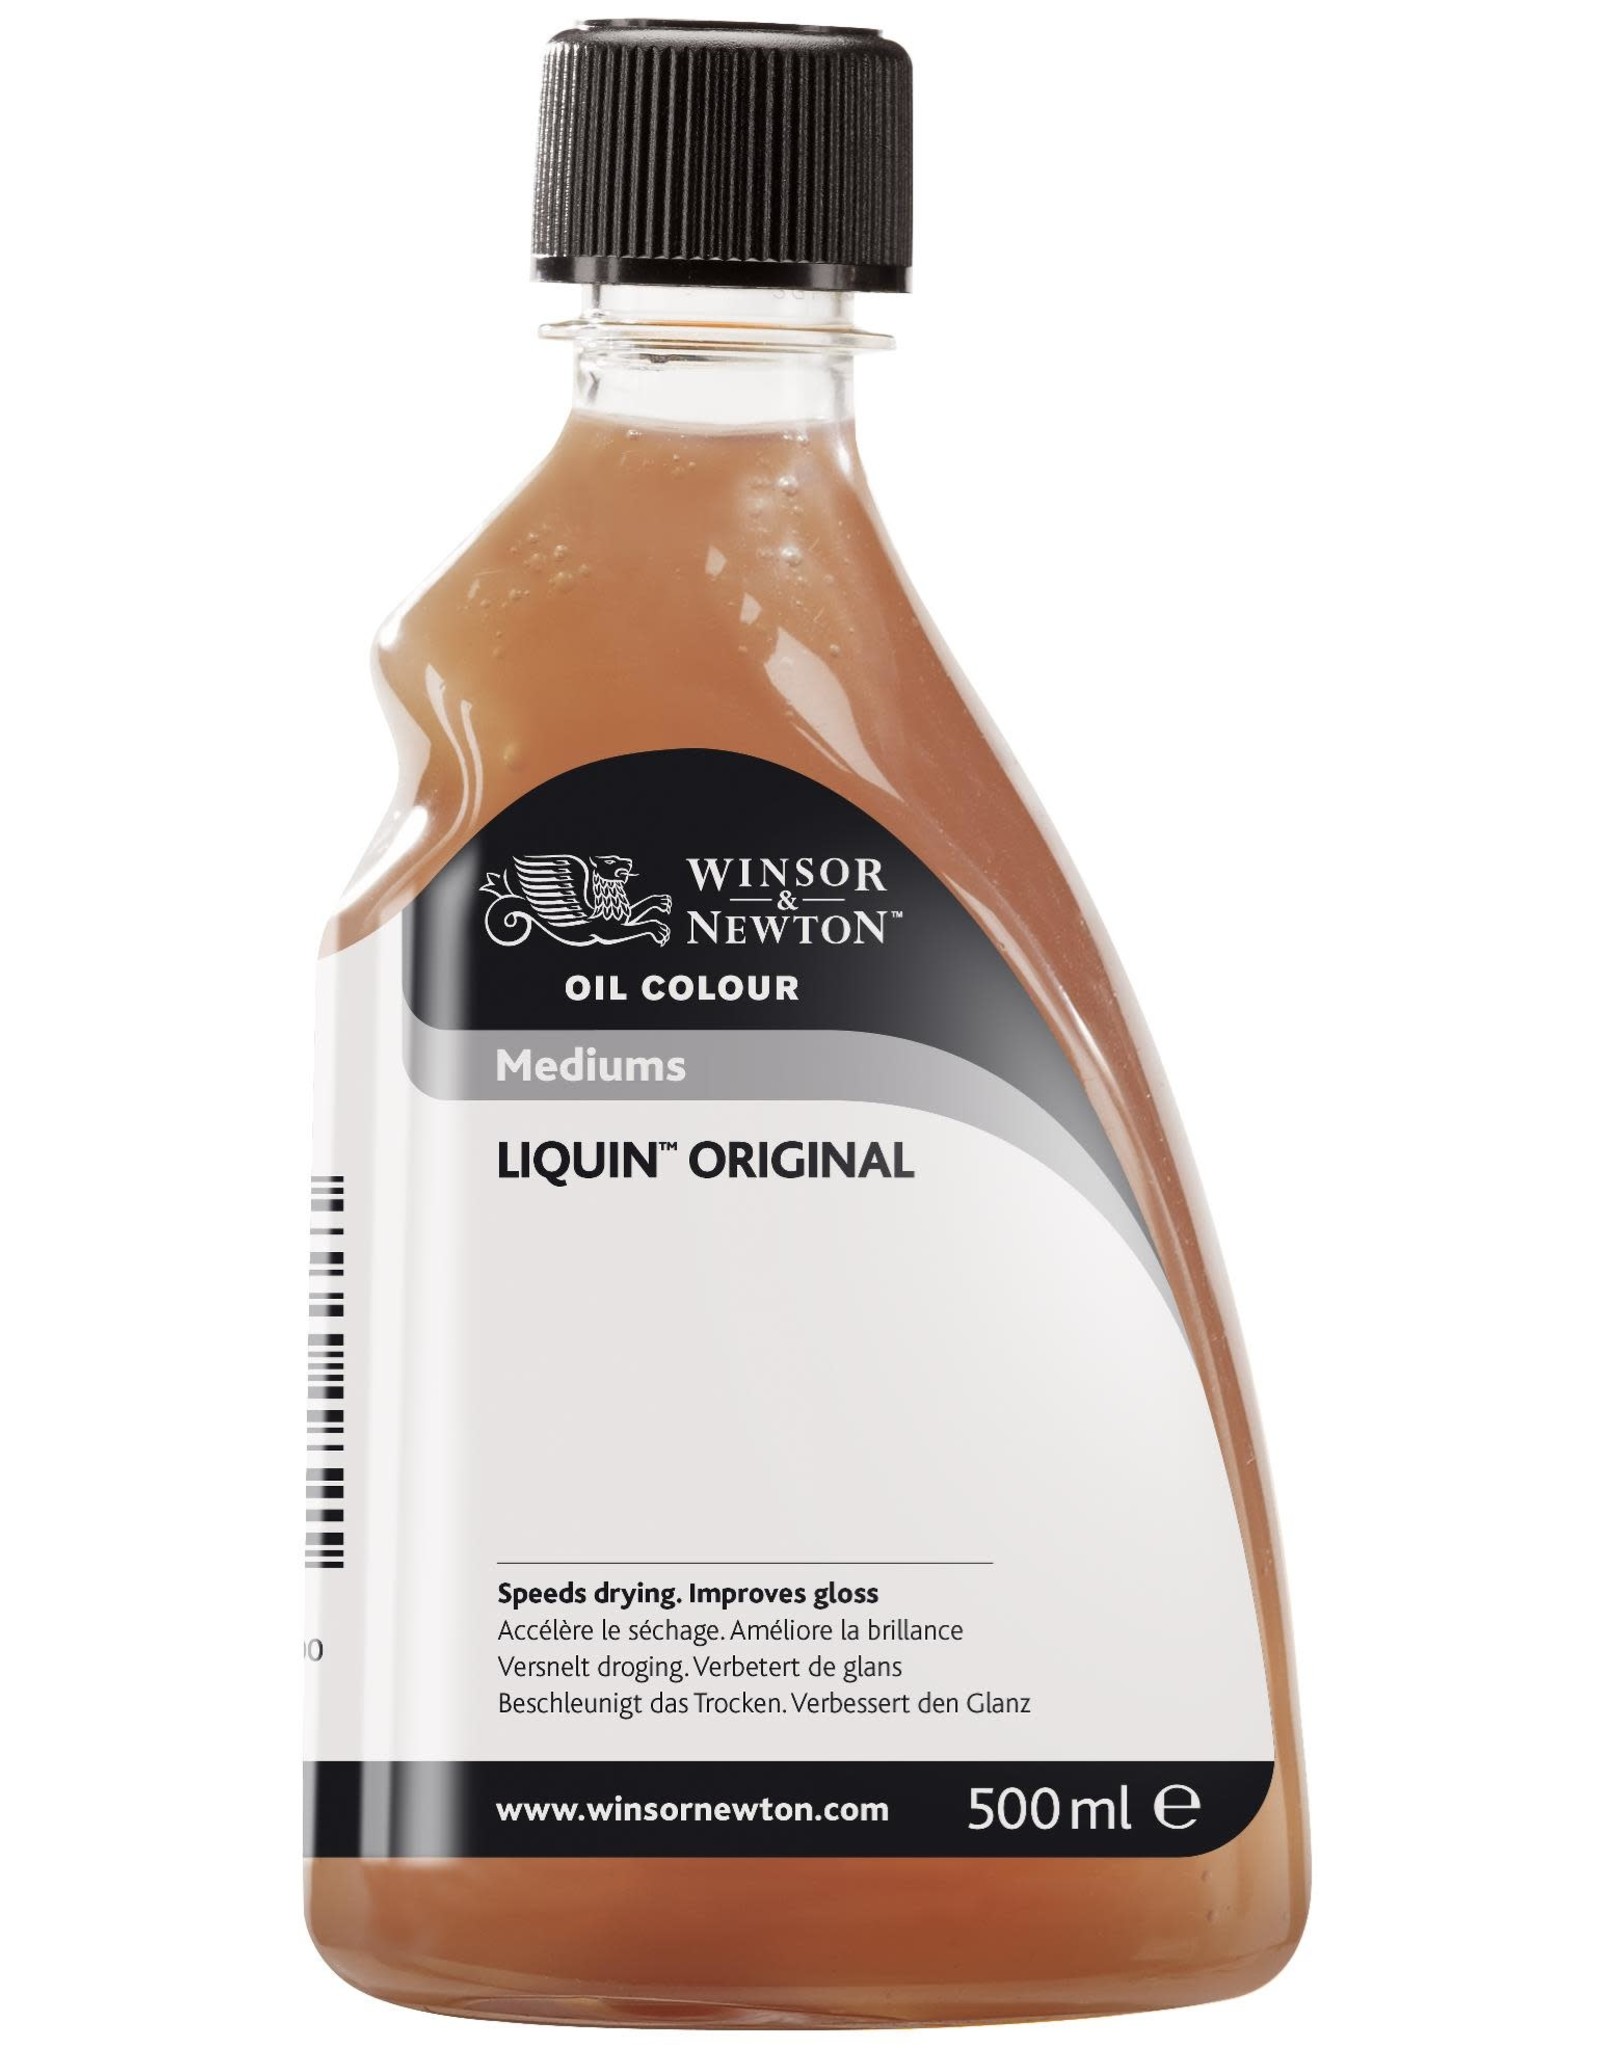 Winsor & Newton Liquin Original fles